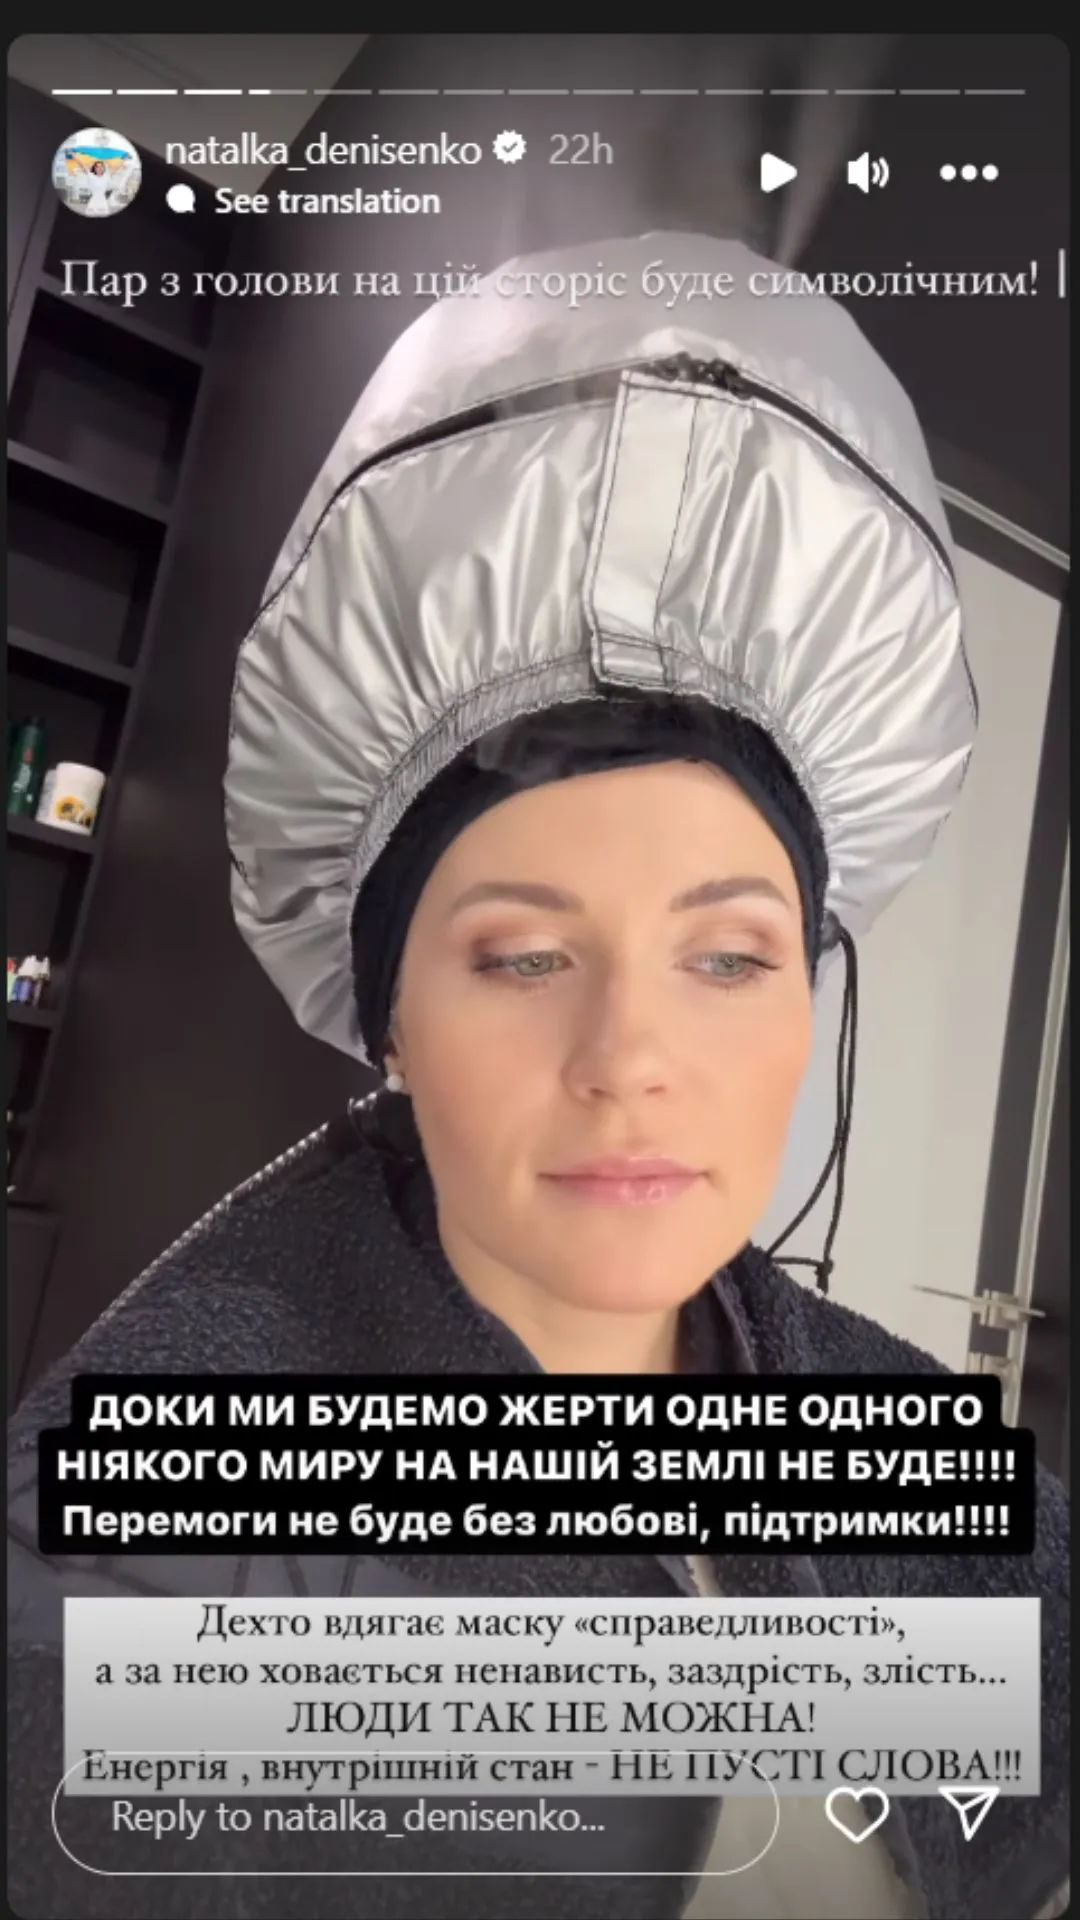 Наталья Денисенко ответила на критику подписчиков